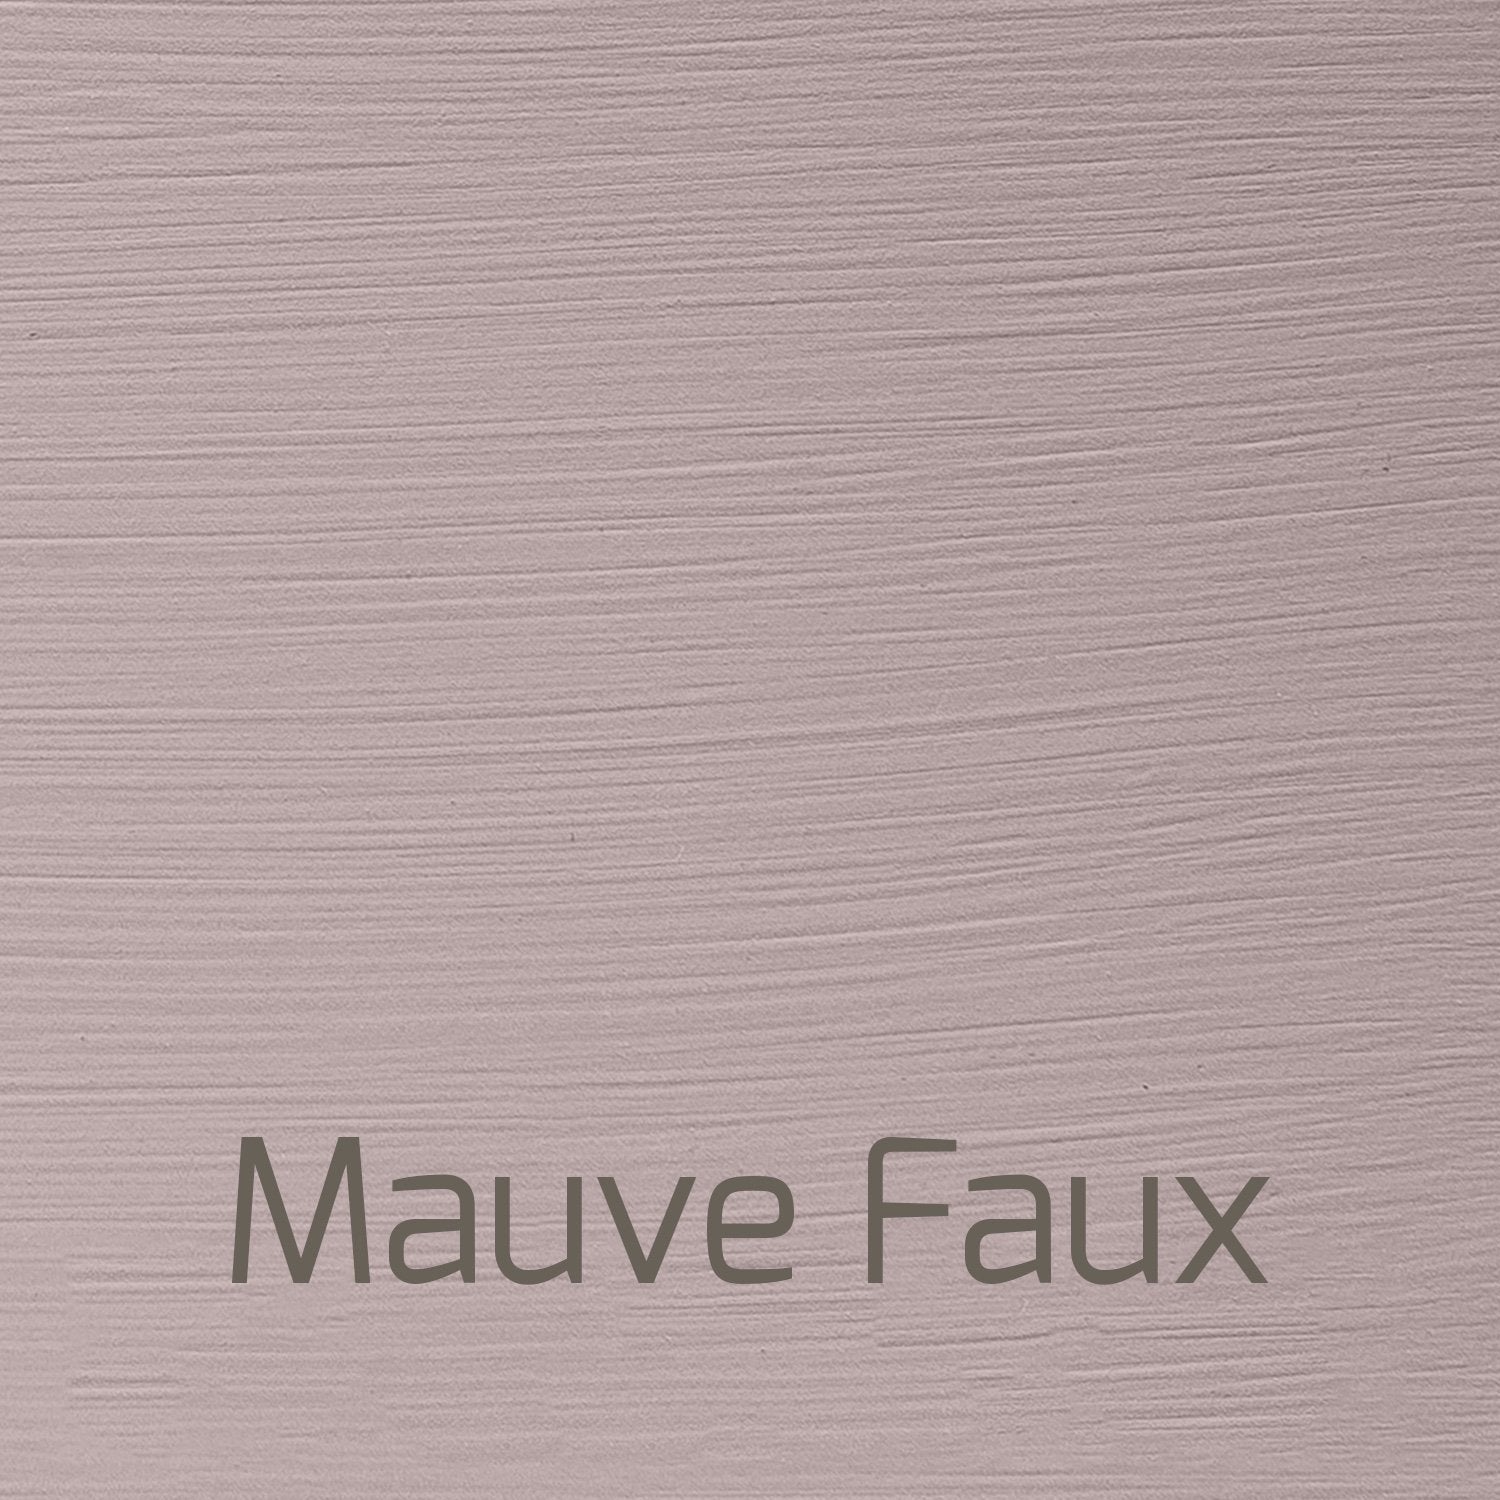 Mauve Faux - Vintage-Vintage-Autentico Paint Online